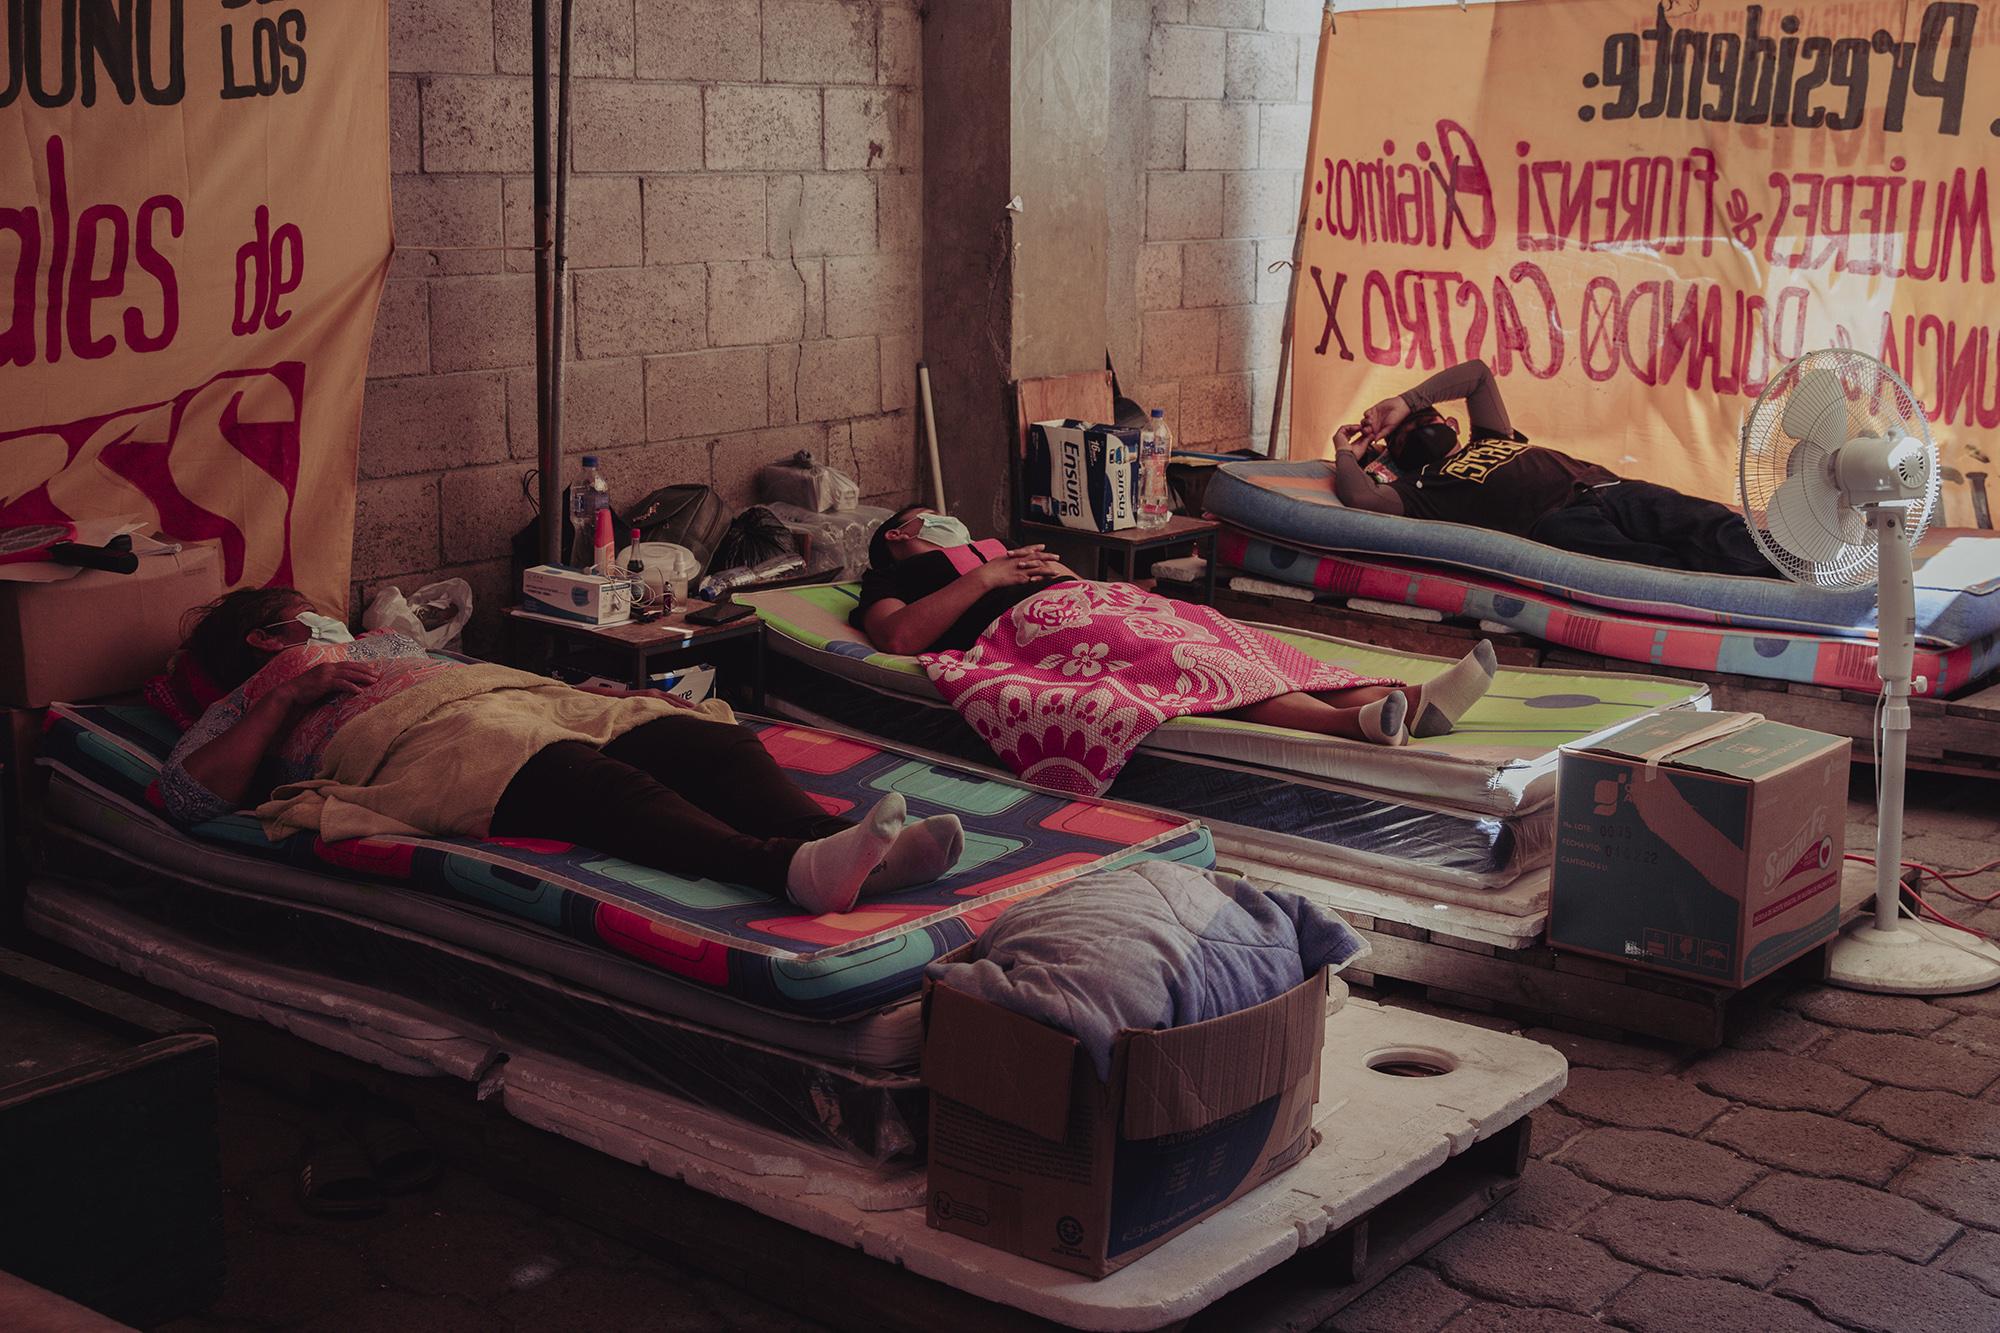 Lucía Torres, Nuria Martínez, José Rivas tras 64 días de huelga de hambre, en esos días padecieron de algunas enfermedades como retención de líquidos, desarrollo de hipertensión. Únicamente tomaron suero, agua y algunos batidos energéticos. 